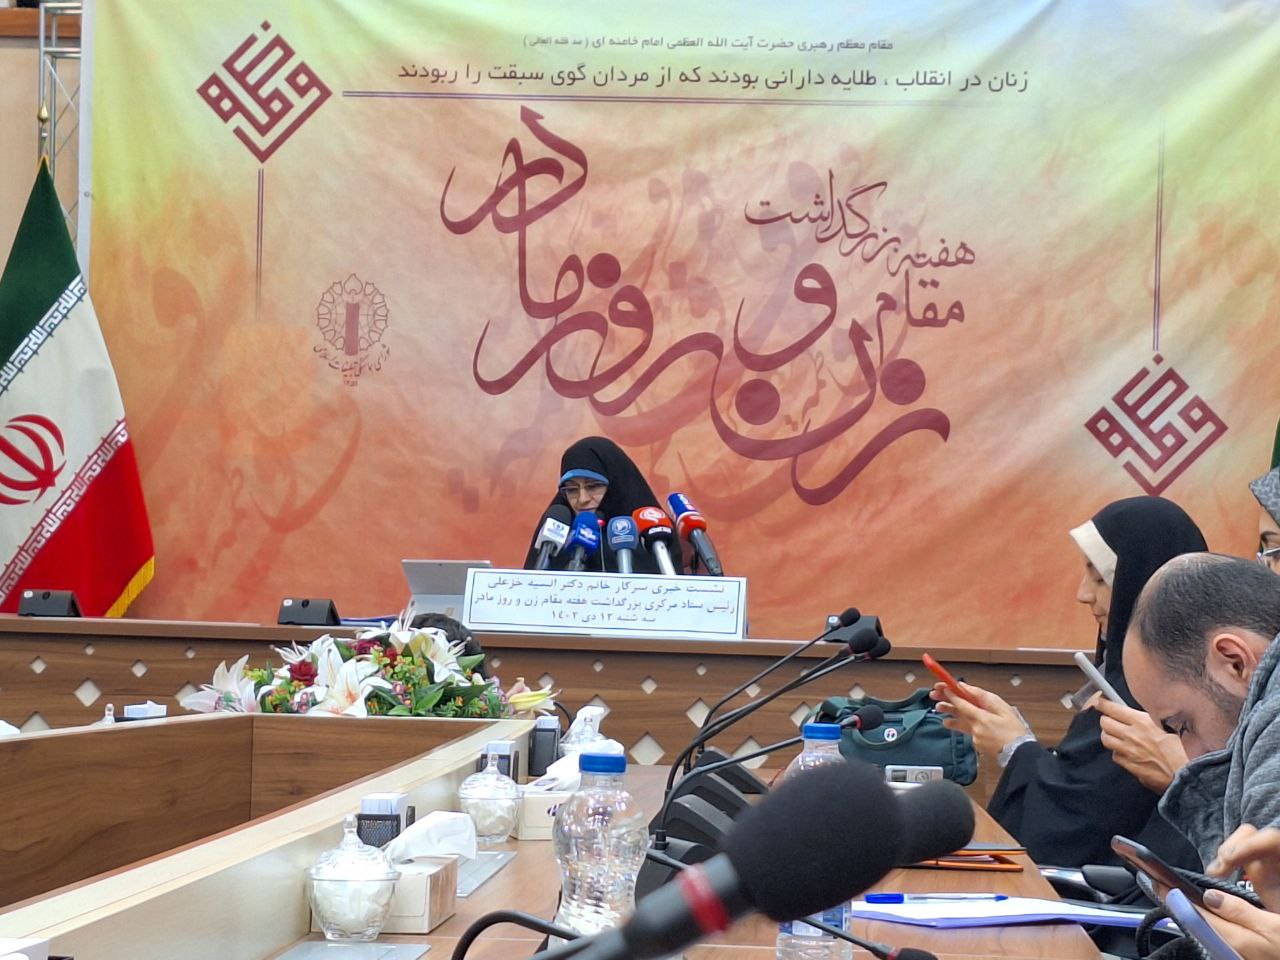 نشست خبری رئیس ستاد مرکزی بزرگداشت هفته مقام زن و مادر  برگزار شد/خزعلی:زنان غزه ایثارگری و شیرزنی را به اوج رساندند